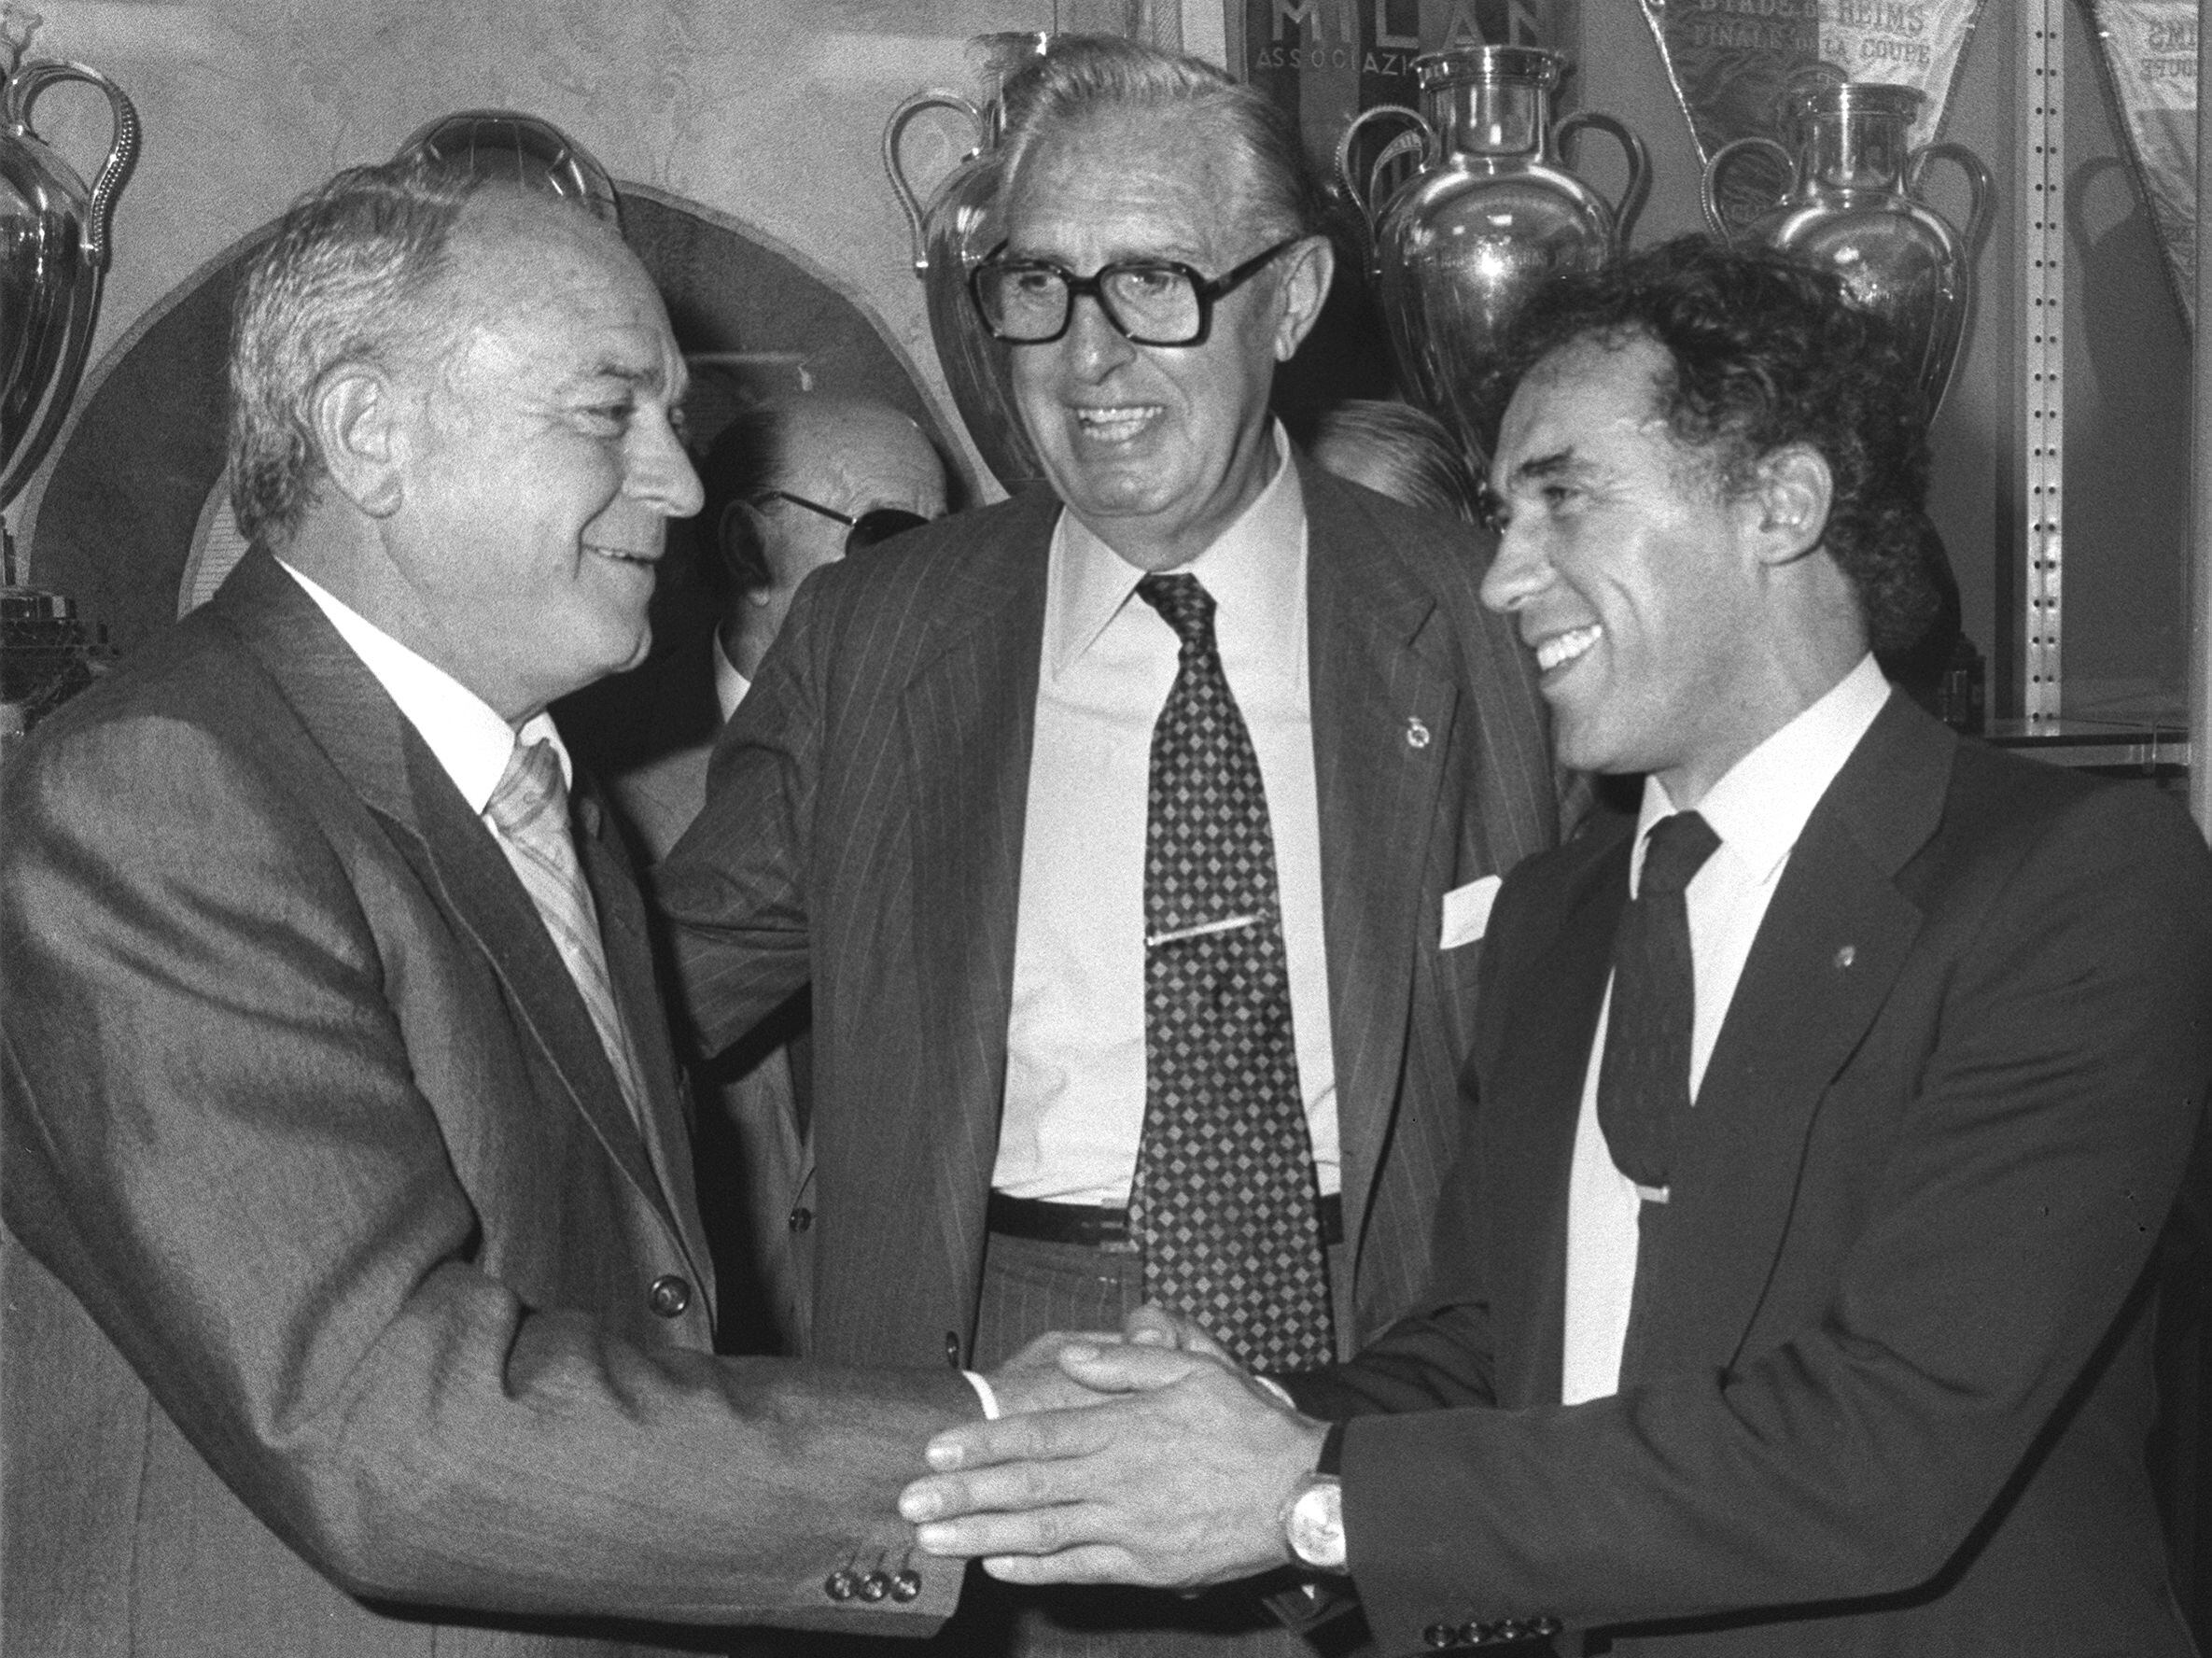 Alfredo di Stéfano (a la izquierda) y Amancio Amaro (a la derecha), se saludan en presencia del presidente del Real Madrid, Luis de Carlos, tras formalizar el compromiso oficial de ambos como entrenadores del Real Madrid y del Castilla, respectivamente, en 1982.